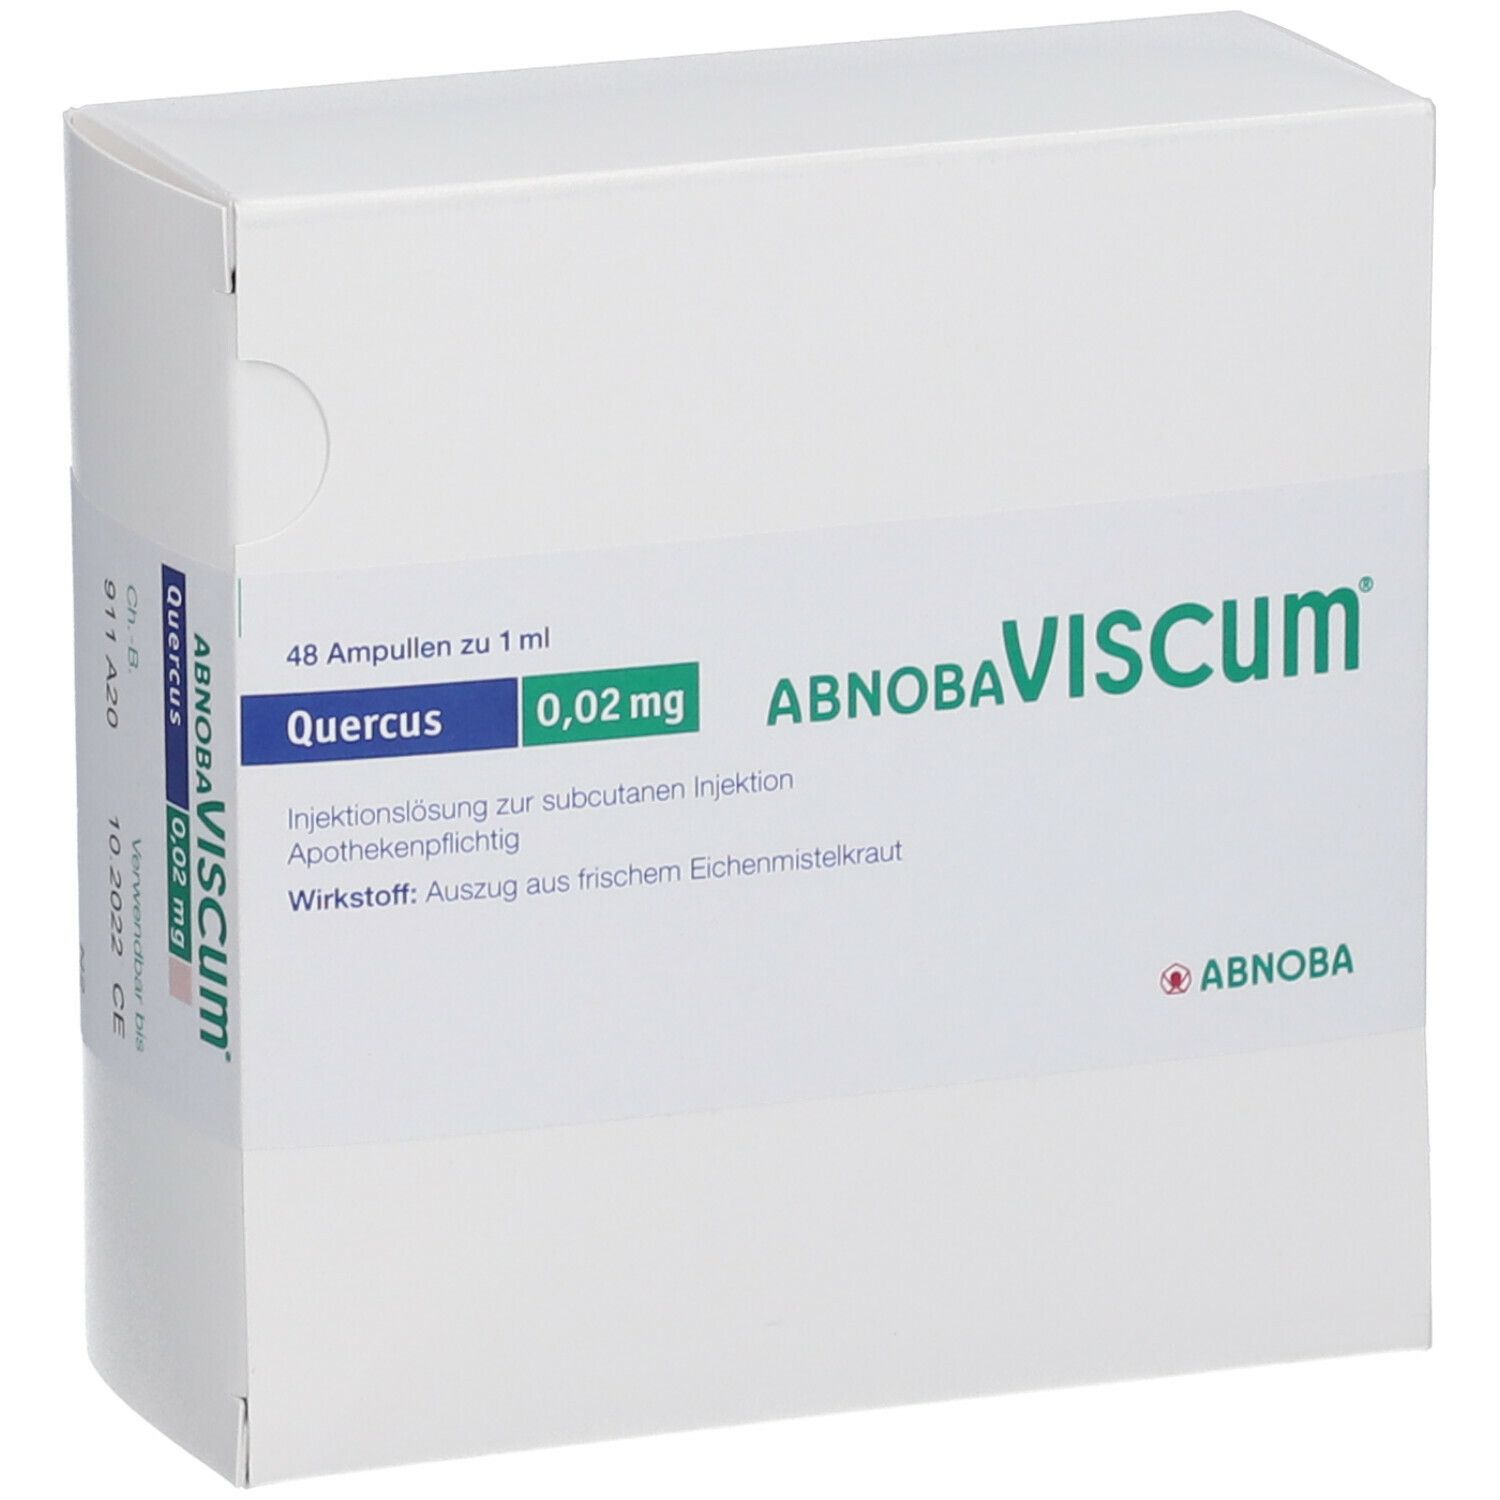 abnobaVISCUM® Quercus 0,02 mg Ampullen